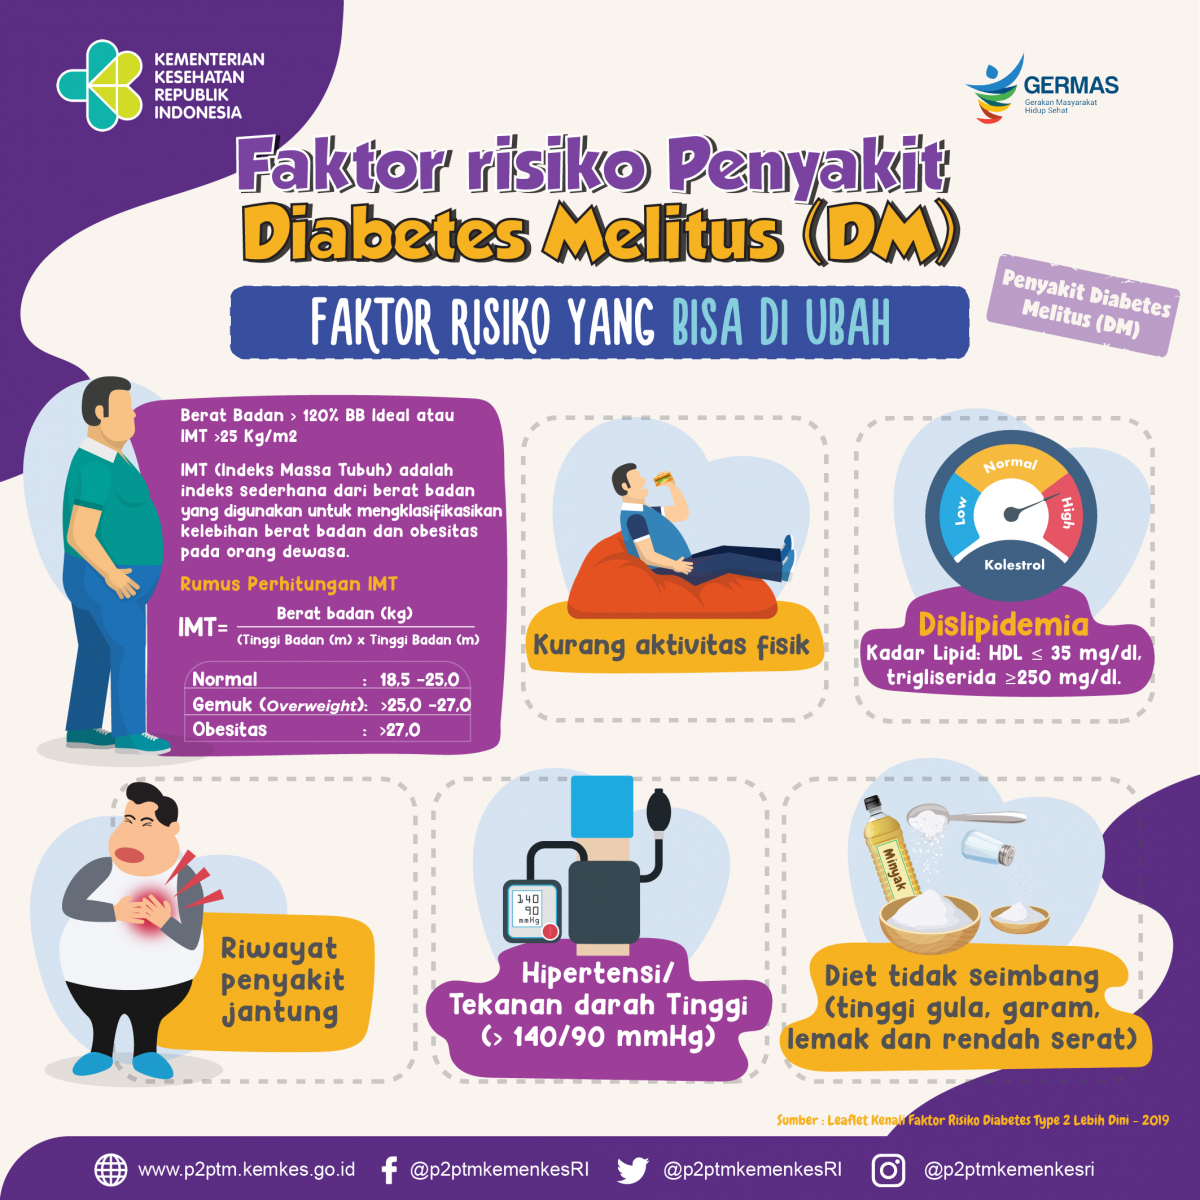 Sobat Sehat, berikut ini faktor risiko penyakit Diabetes Melitus (DM) yang bisa diubah